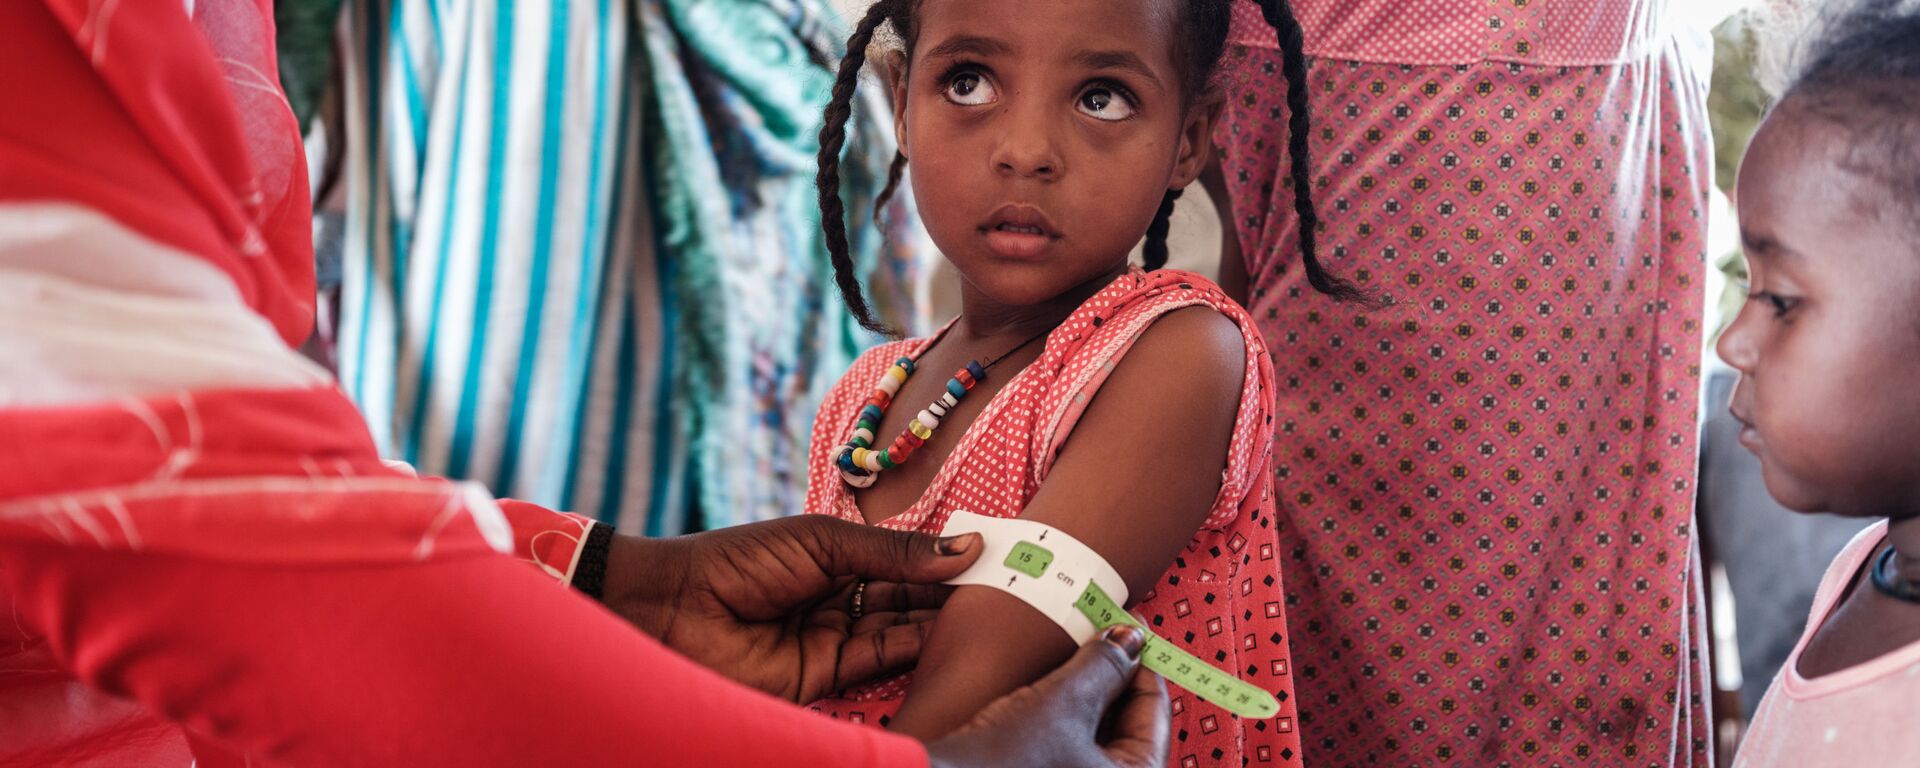 طفلة إثيوبية، تبلغ من العمر 4 سنوات، لاجئة من تيغراي، يتم فحصها في في مركز عبور فيليج إيت لسوء التغذية  بالقرب من الحدود الإثيوبية في القضارف شرق السودان، 2 ديسمبر 2020. - سبوتنيك عربي, 1920, 21.10.2023